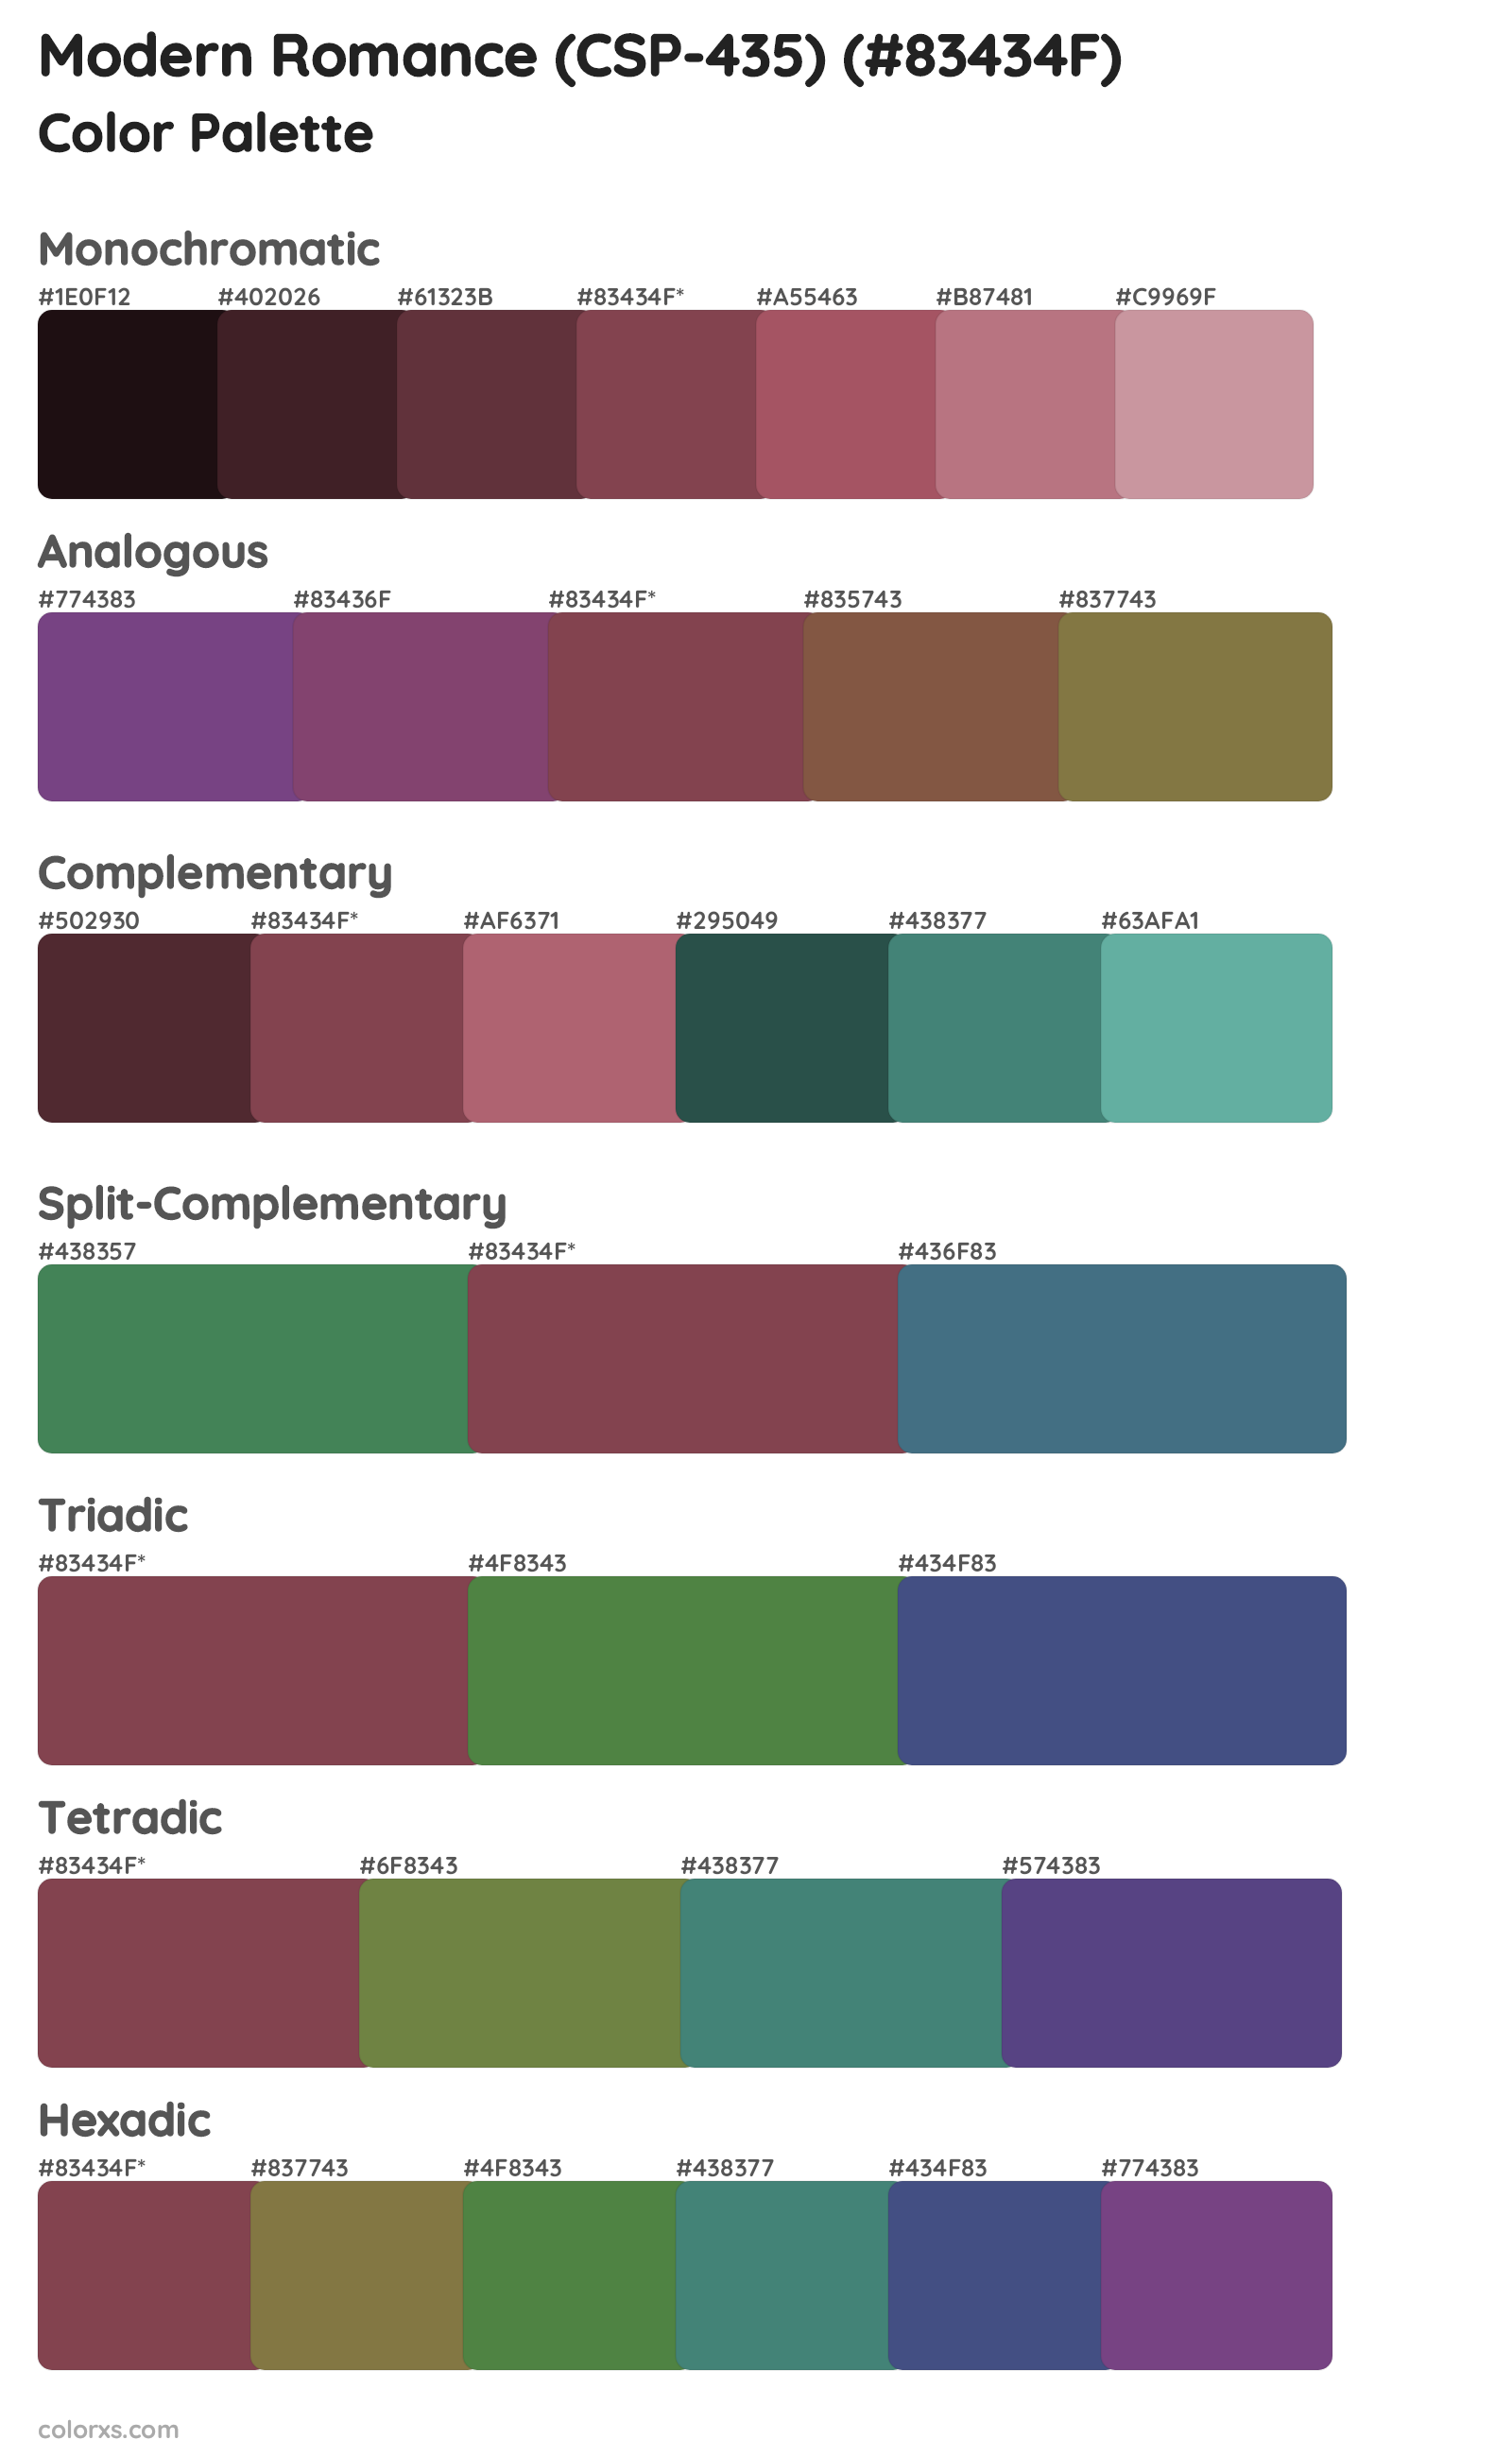 Modern Romance (CSP-435) Color Scheme Palettes